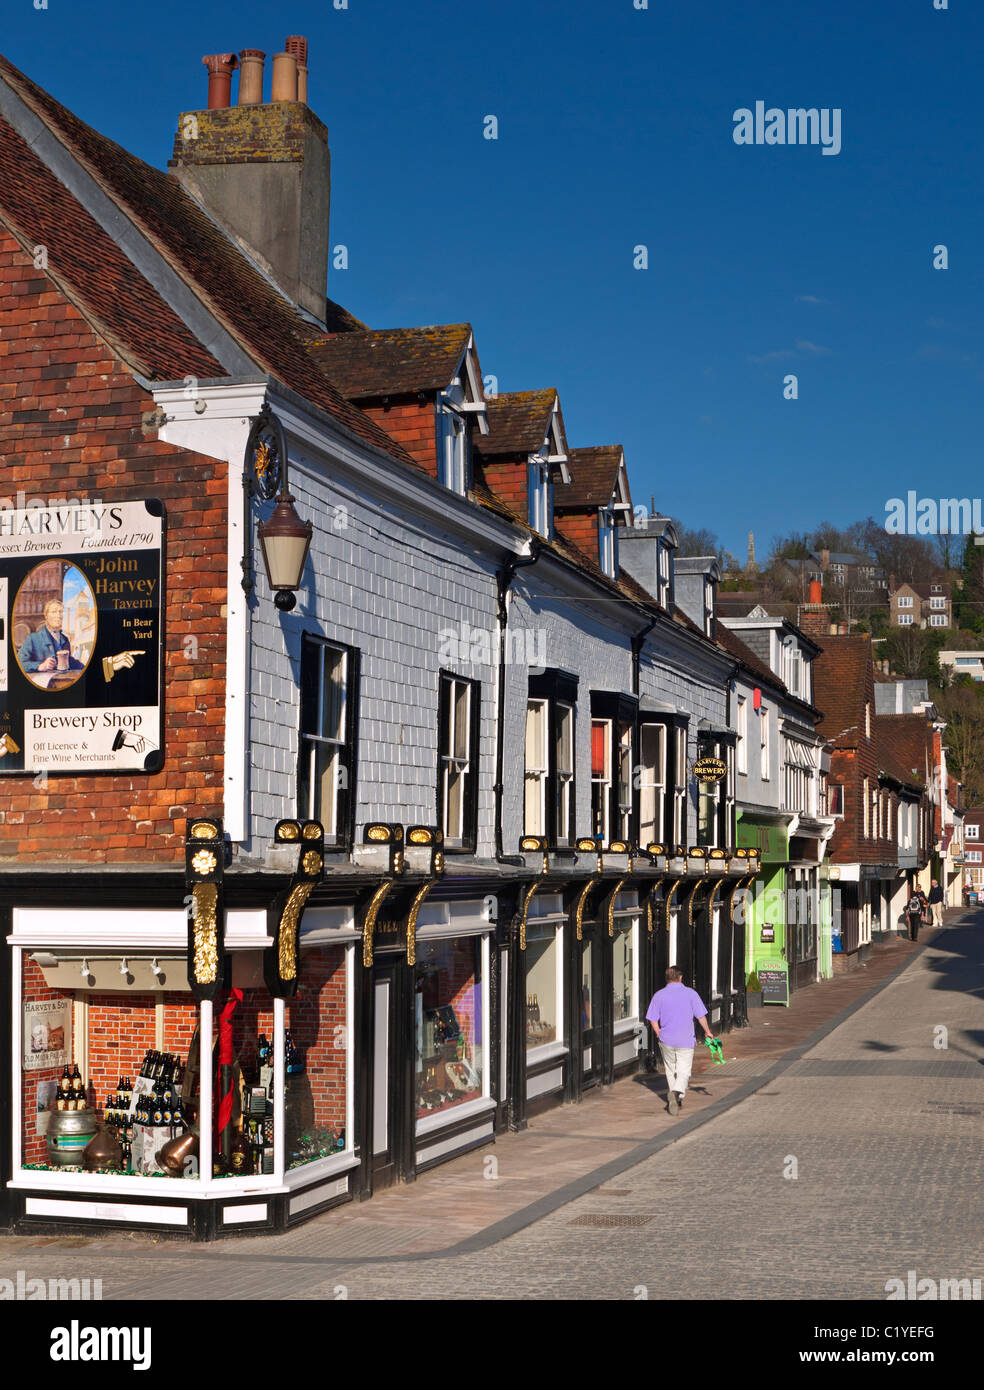 High Street in einer ruhigen Fußgängerzone und Harveys historische Brauerei shop untere Lewes, East Sussex UK Stockfoto